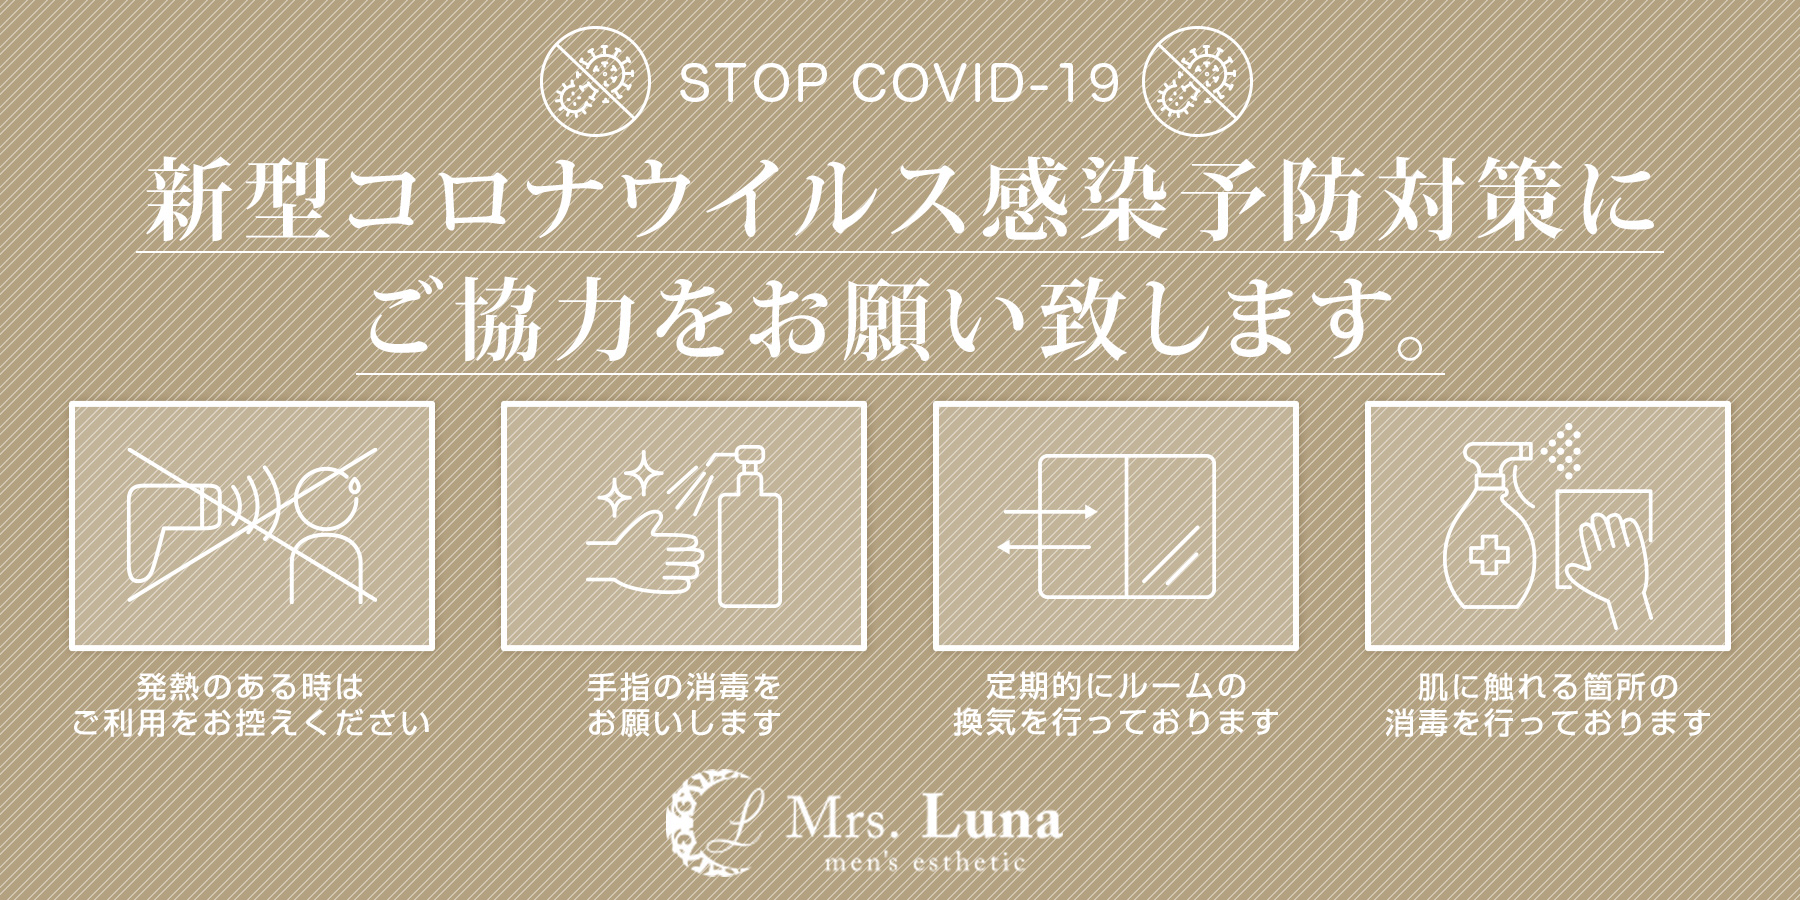 ～新型コロナウイルス感染症（COVID-19）対策とお願いについて～